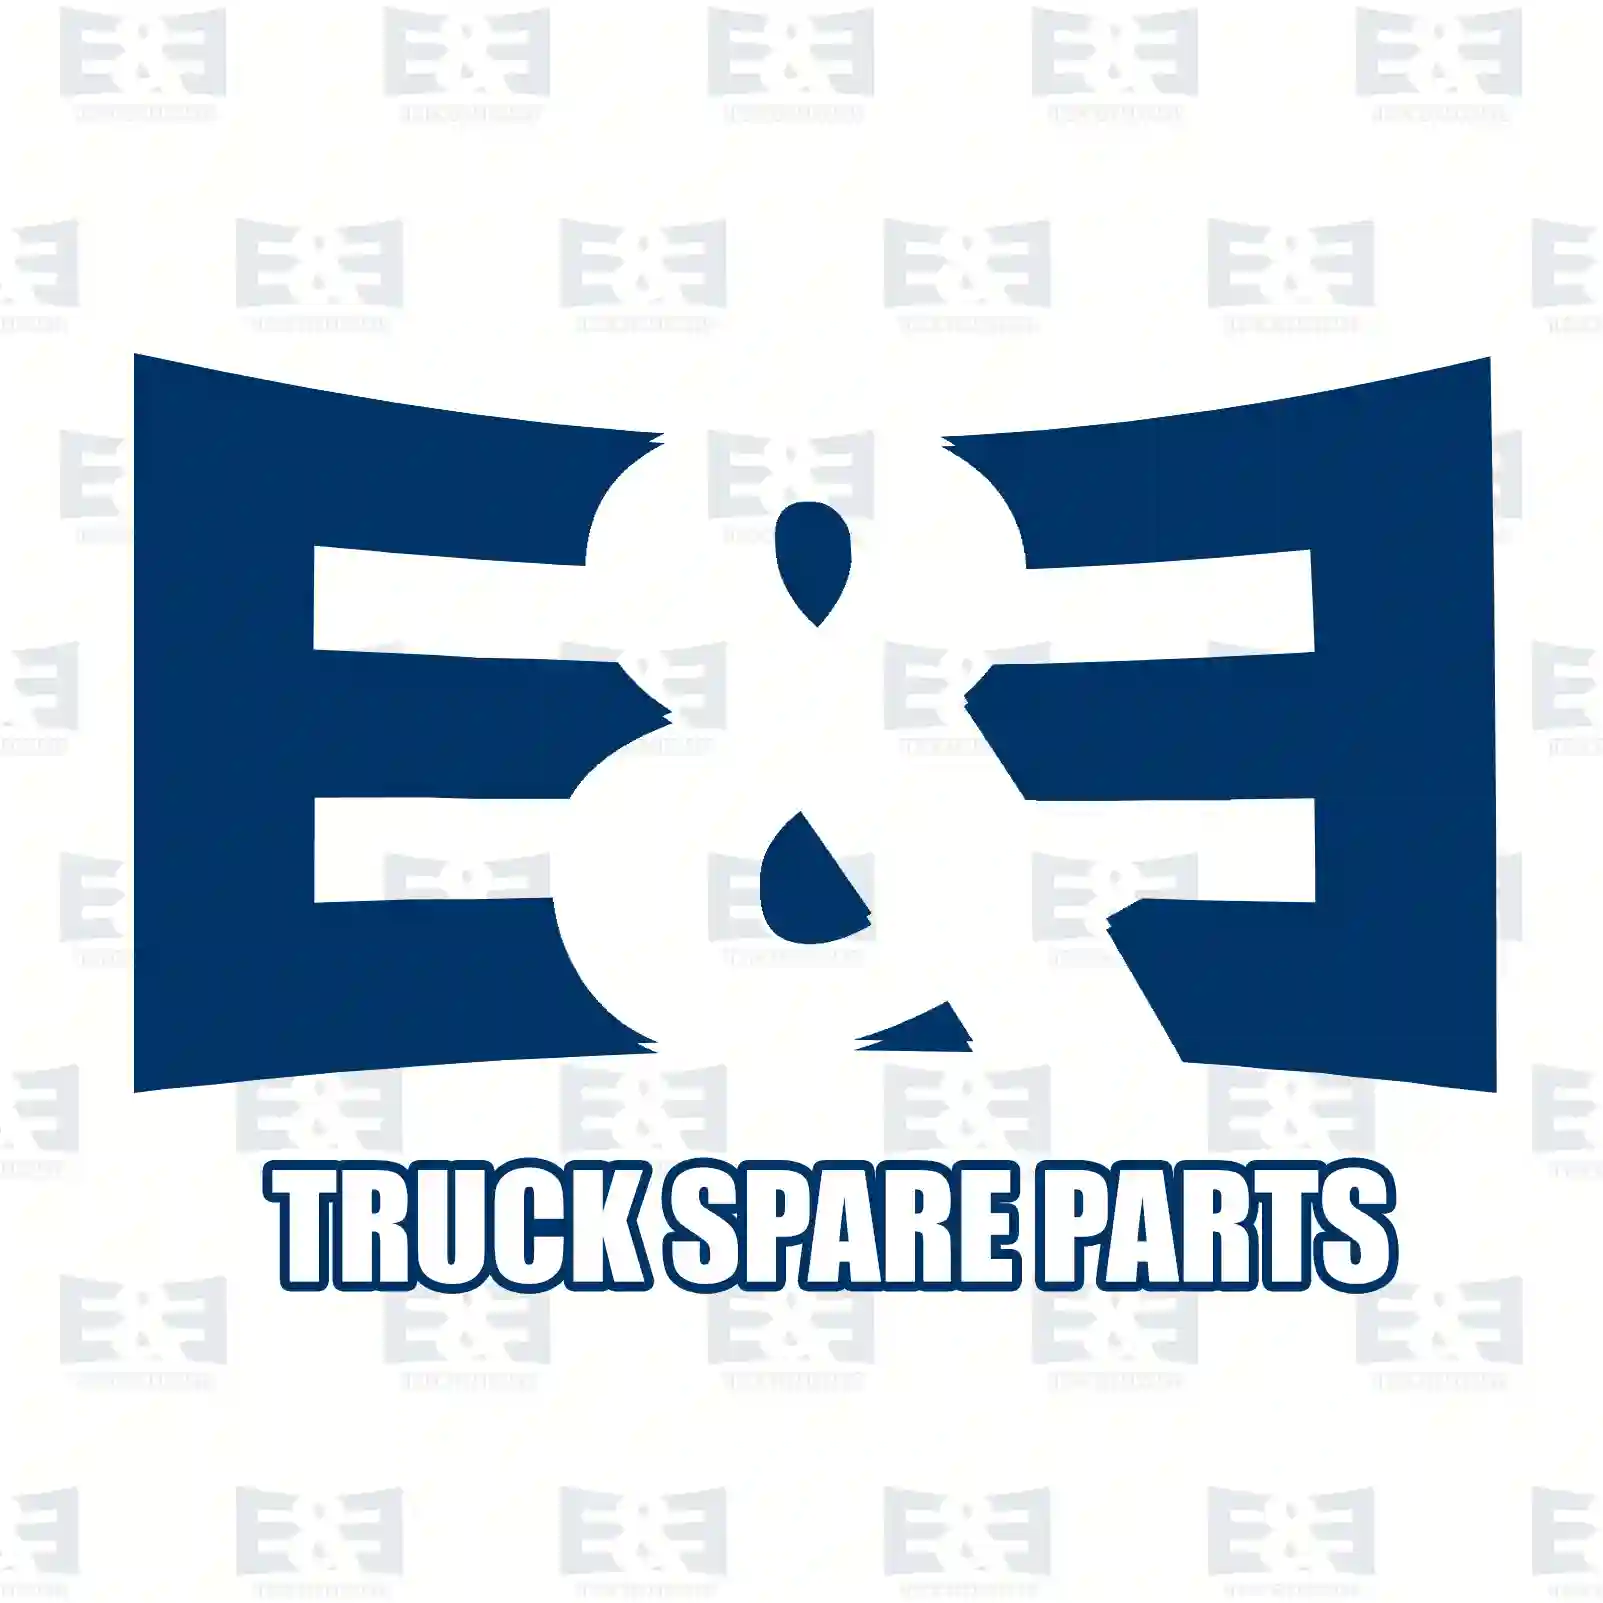 Brake disc, 2E2295019, 6704210012, , , , , , , , , ||  2E2295019 E&E Truck Spare Parts | Truck Spare Parts, Auotomotive Spare Parts Brake disc, 2E2295019, 6704210012, , , , , , , , , ||  2E2295019 E&E Truck Spare Parts | Truck Spare Parts, Auotomotive Spare Parts